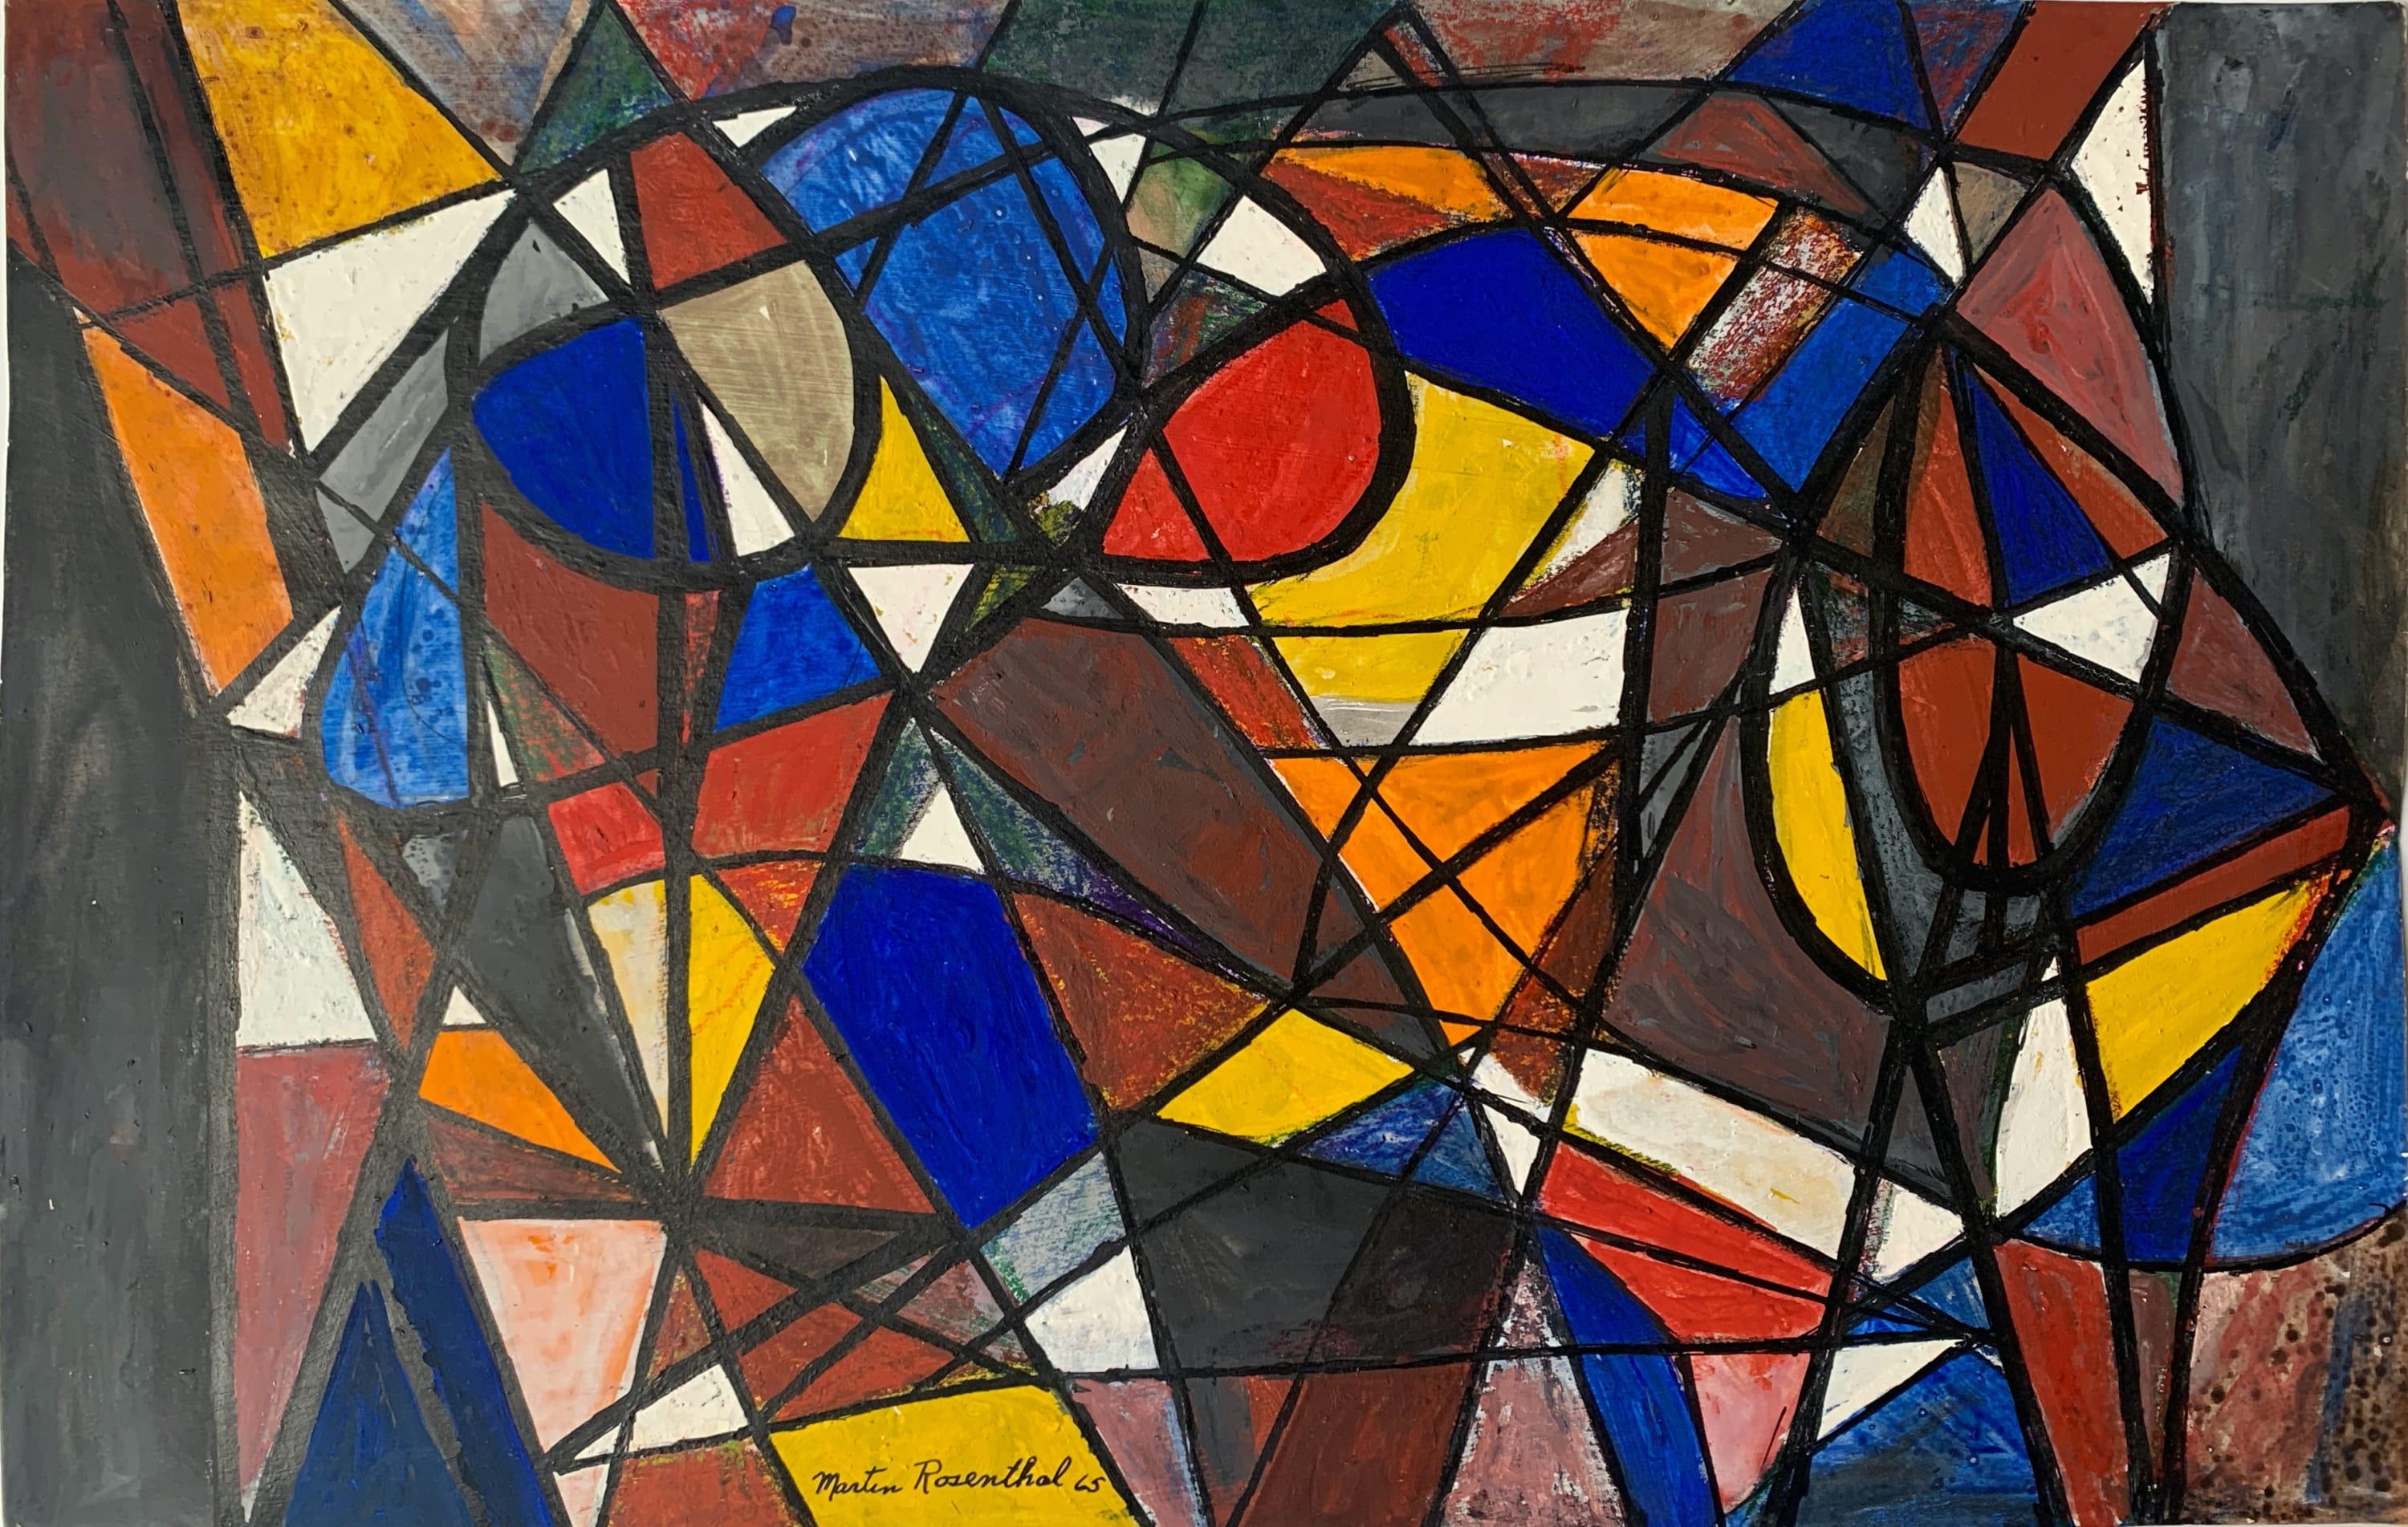 Tableau abstrait Triangles and Semi Circles de 1965 en cobalt, rouge, jaune